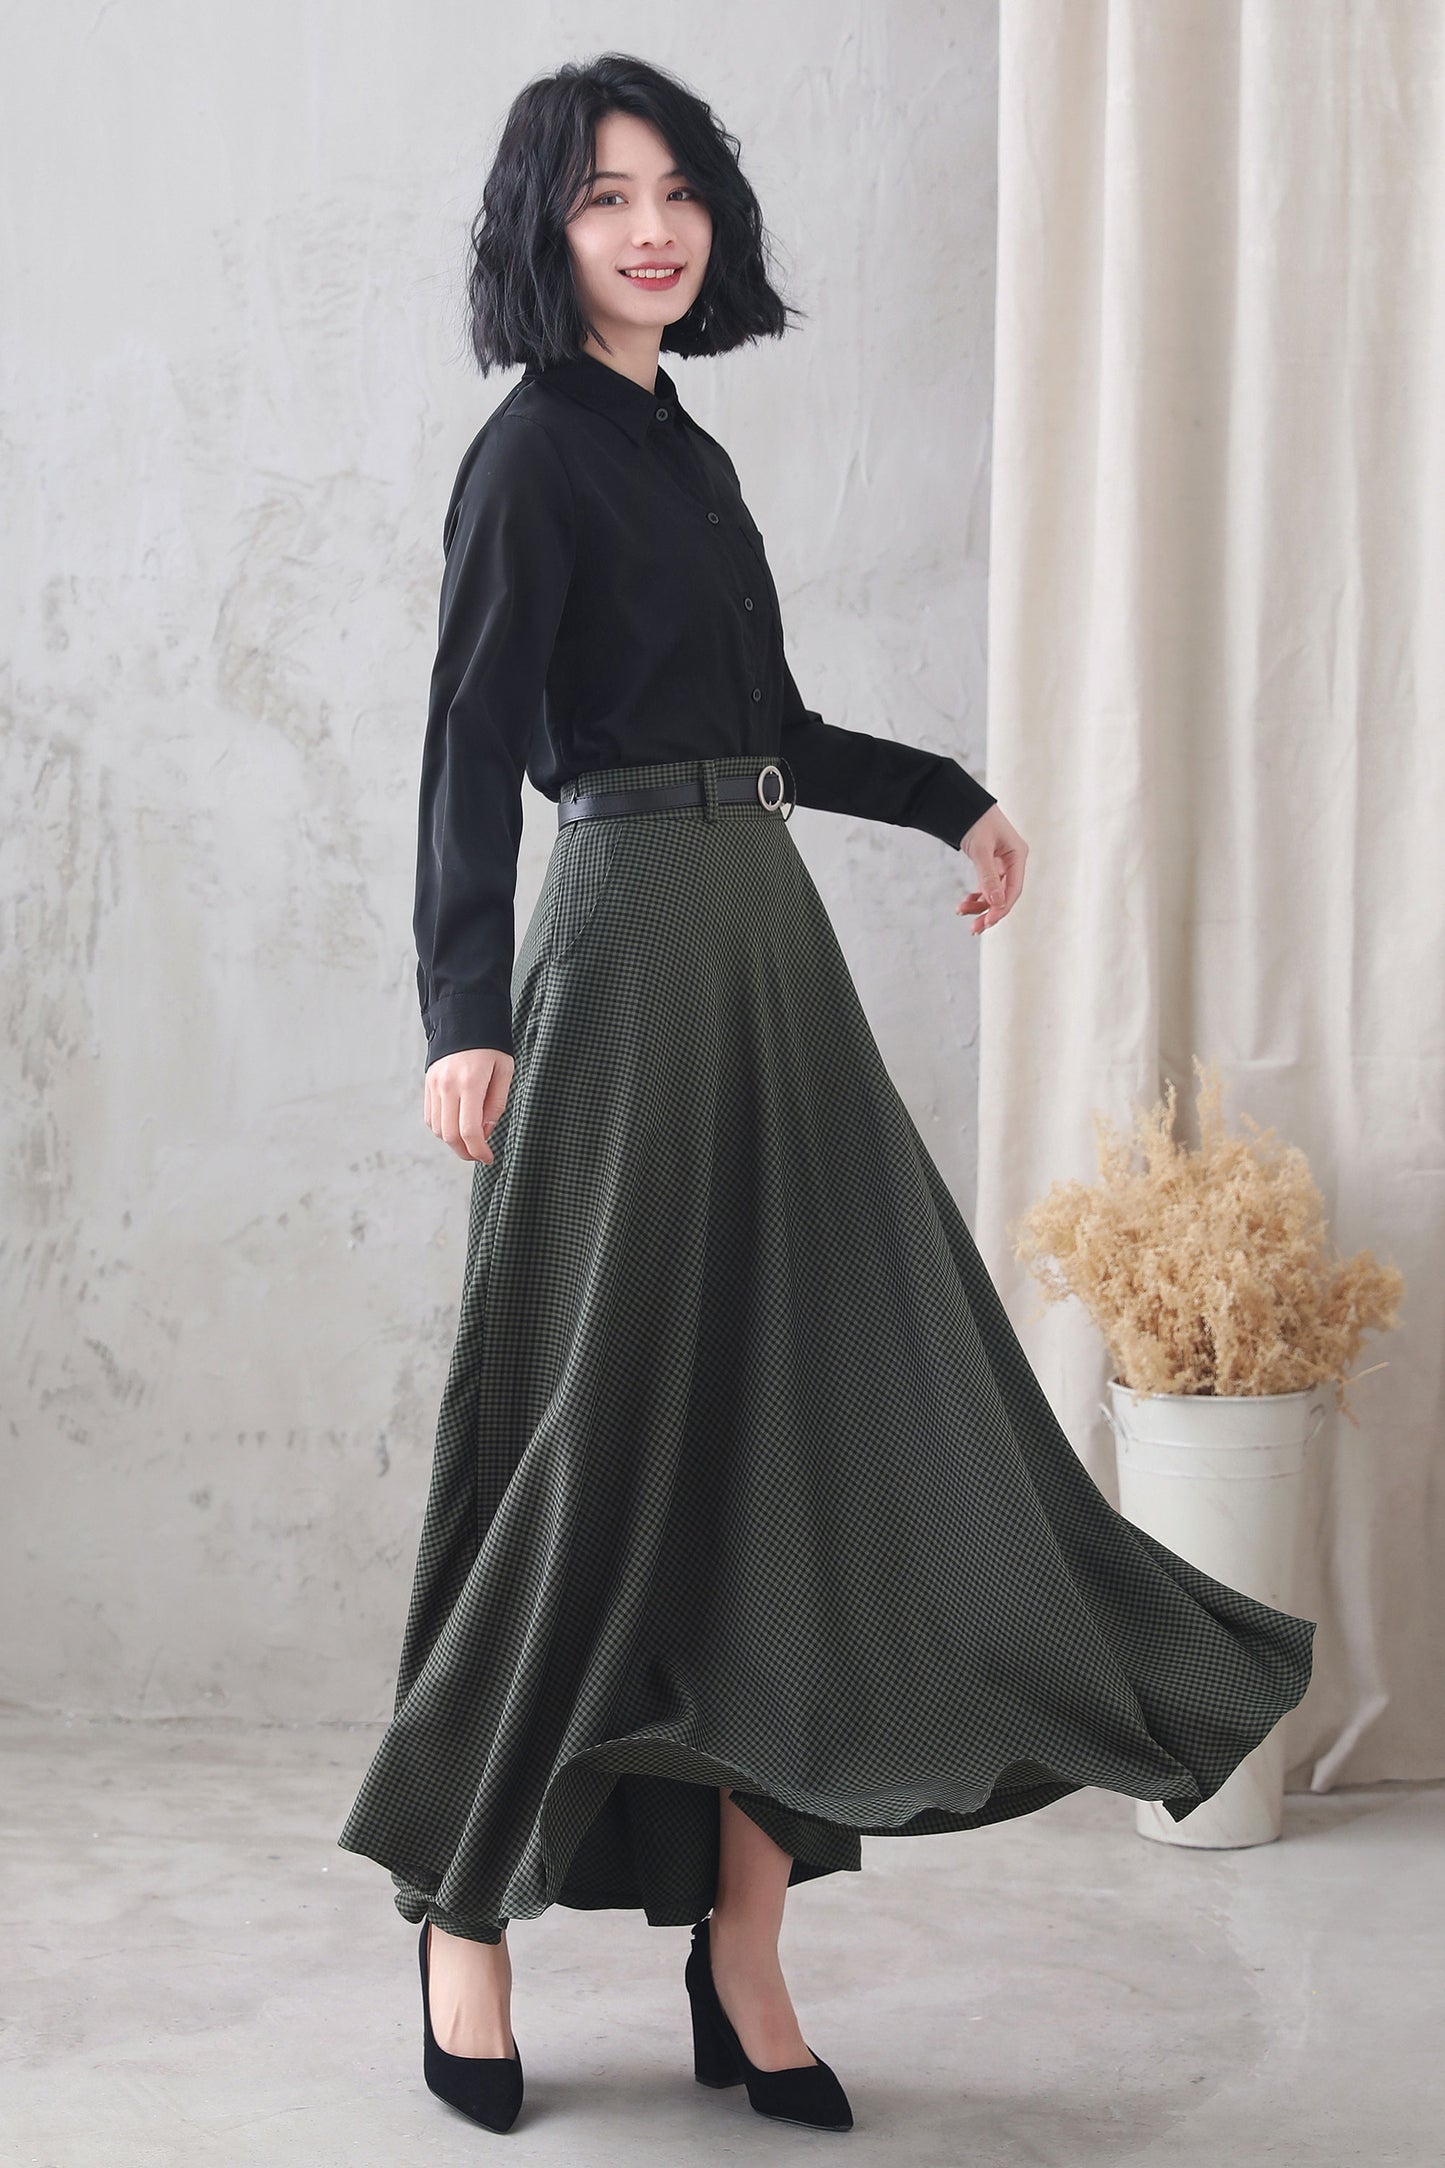 Plaid Cotton Linen Maxi Skirt Womens 3347